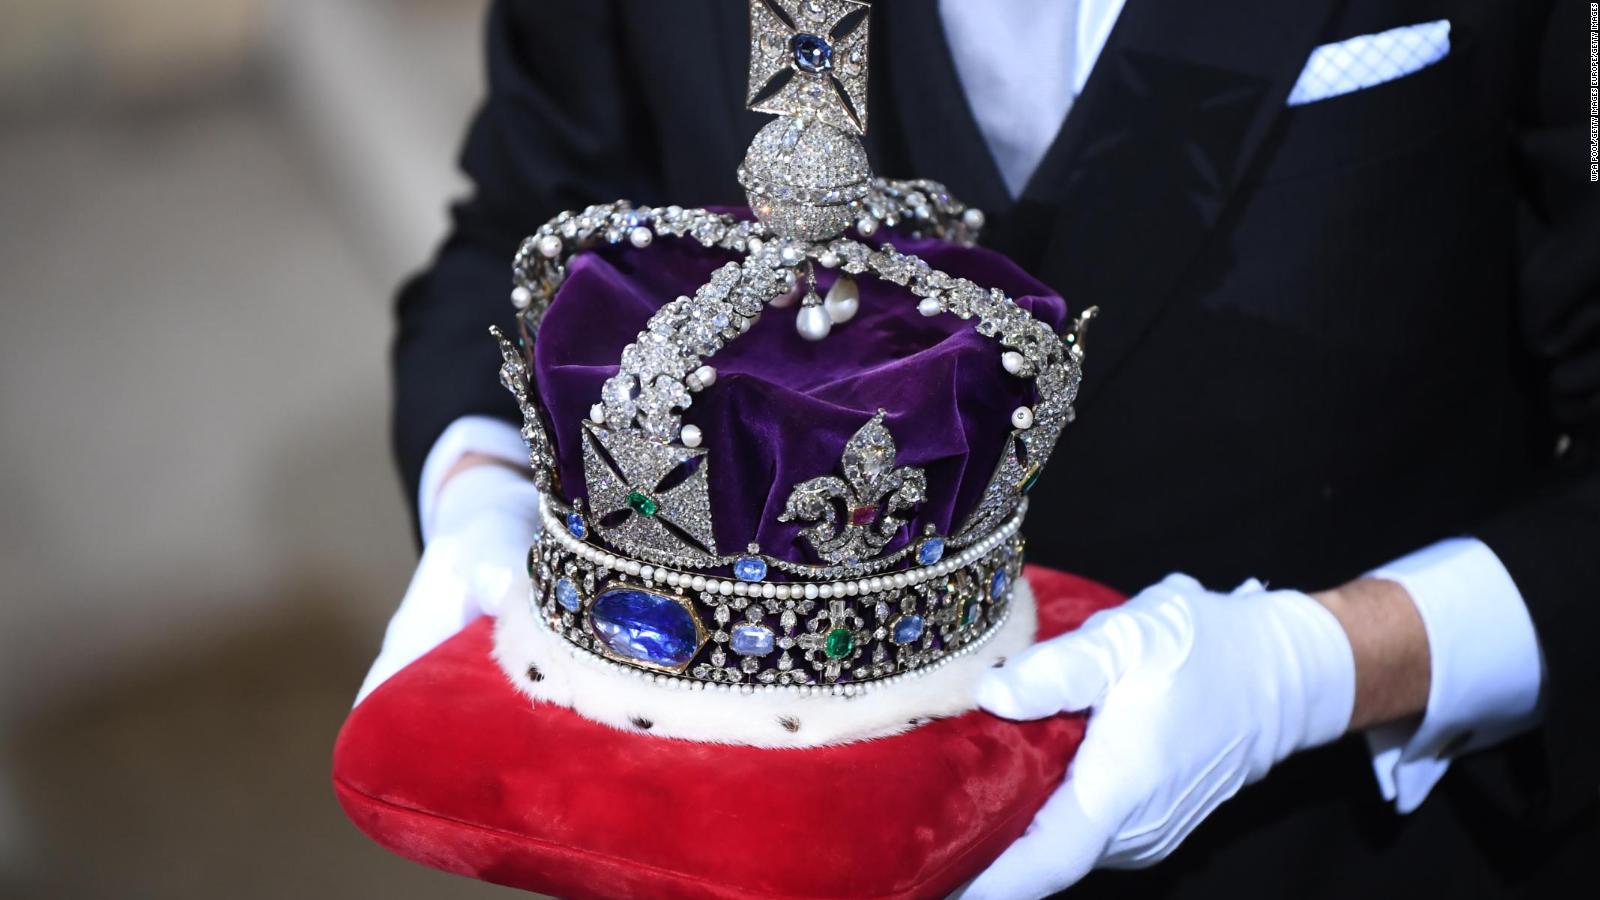 What will happen to Queen Elizabeth II’s jewels?